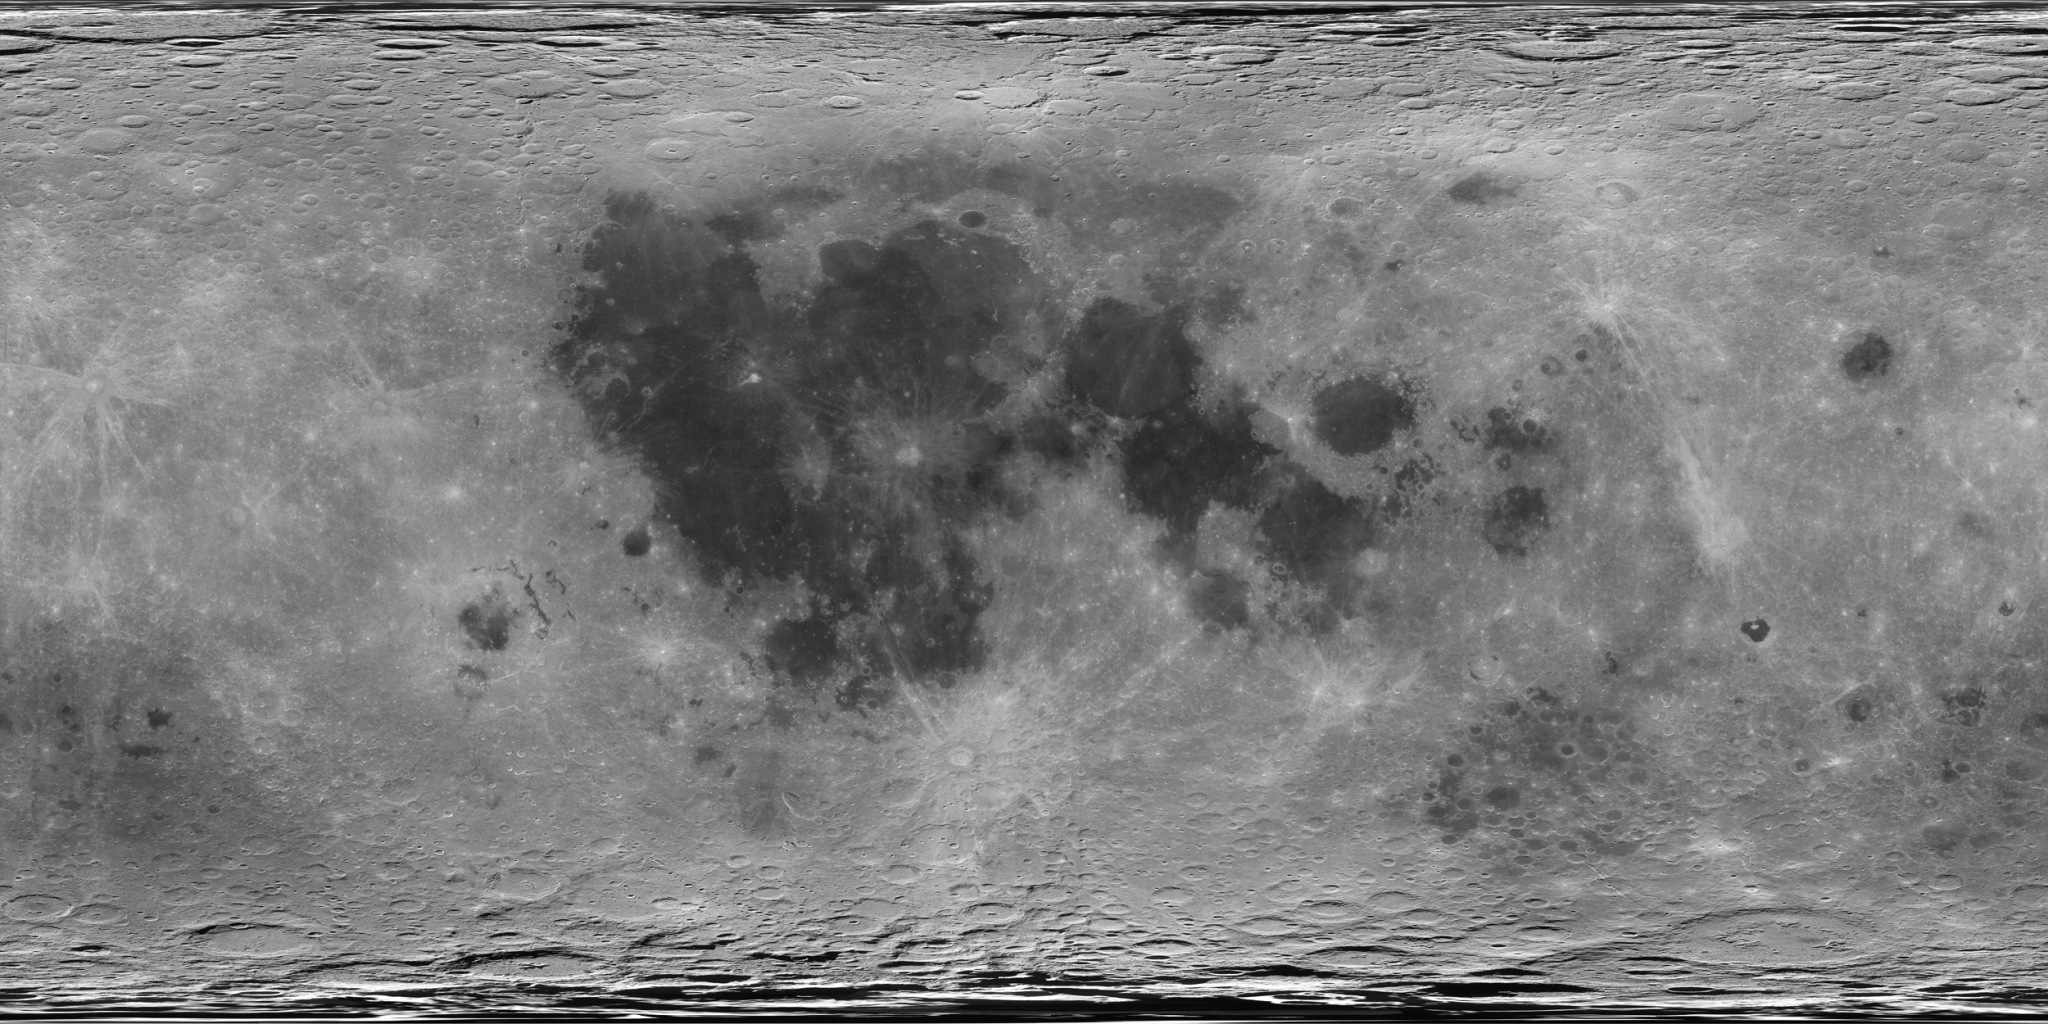 MoonMap.jpg